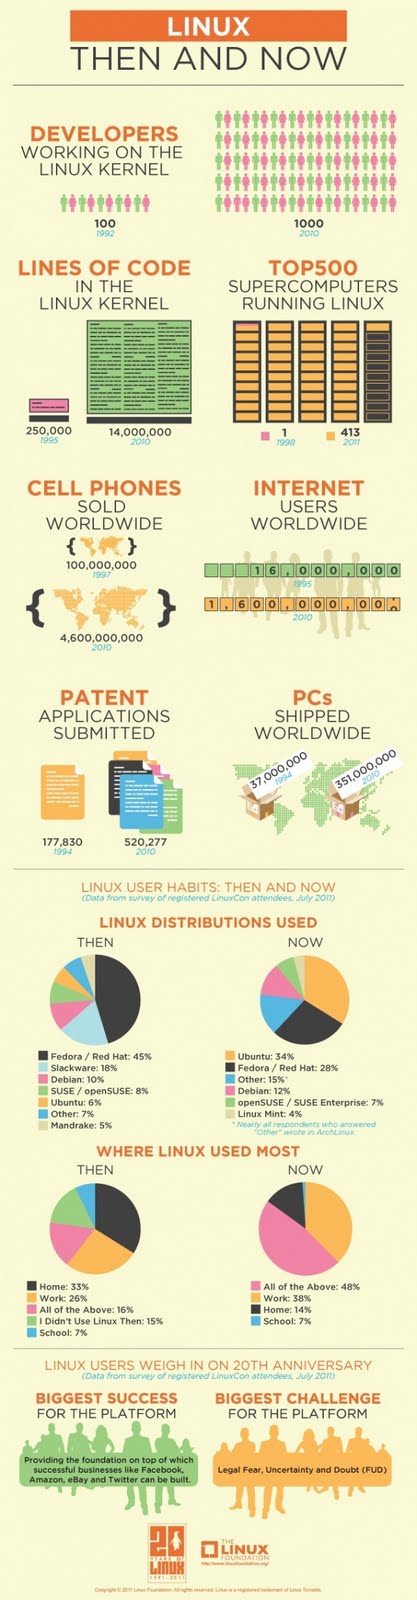 La storia di Linux in un’immagine